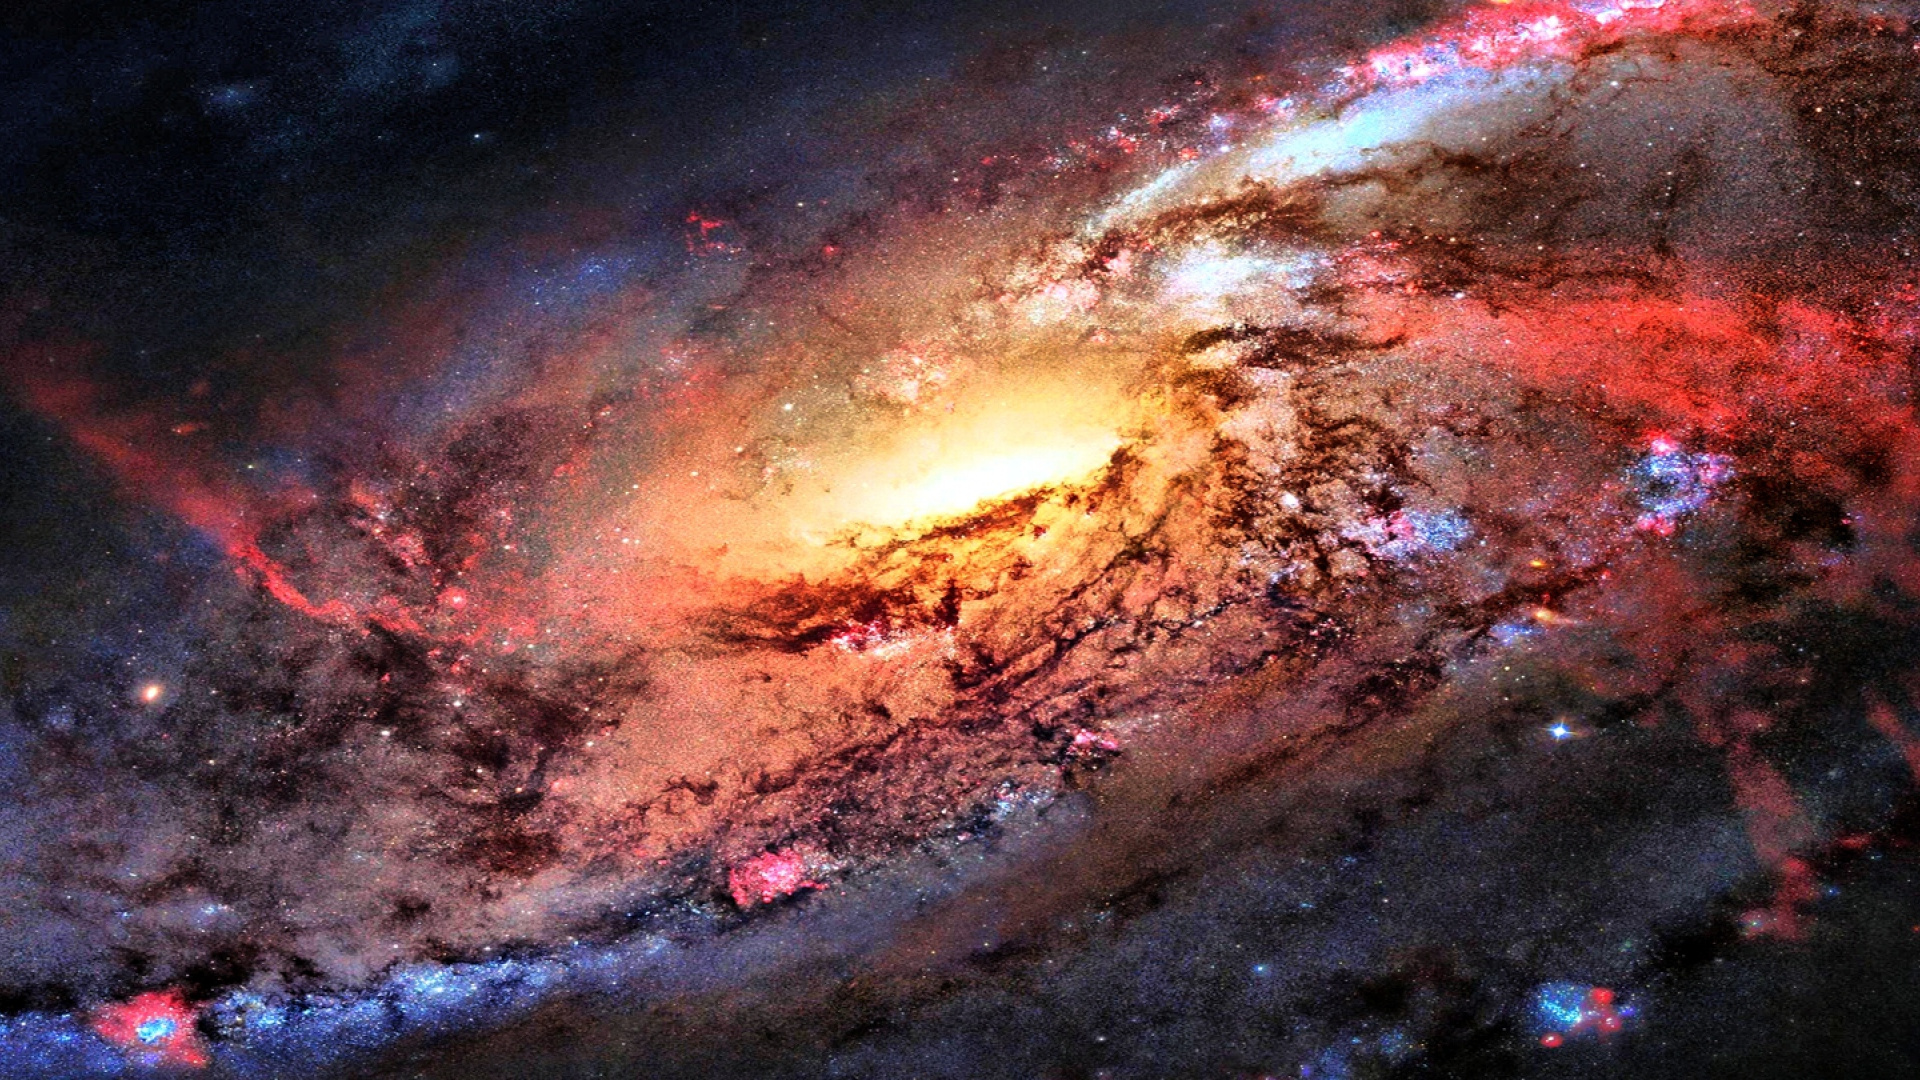 samsung galaxy j2 wallpaper full hd,oggetto astronomico,spazio,atmosfera,spazio,universo